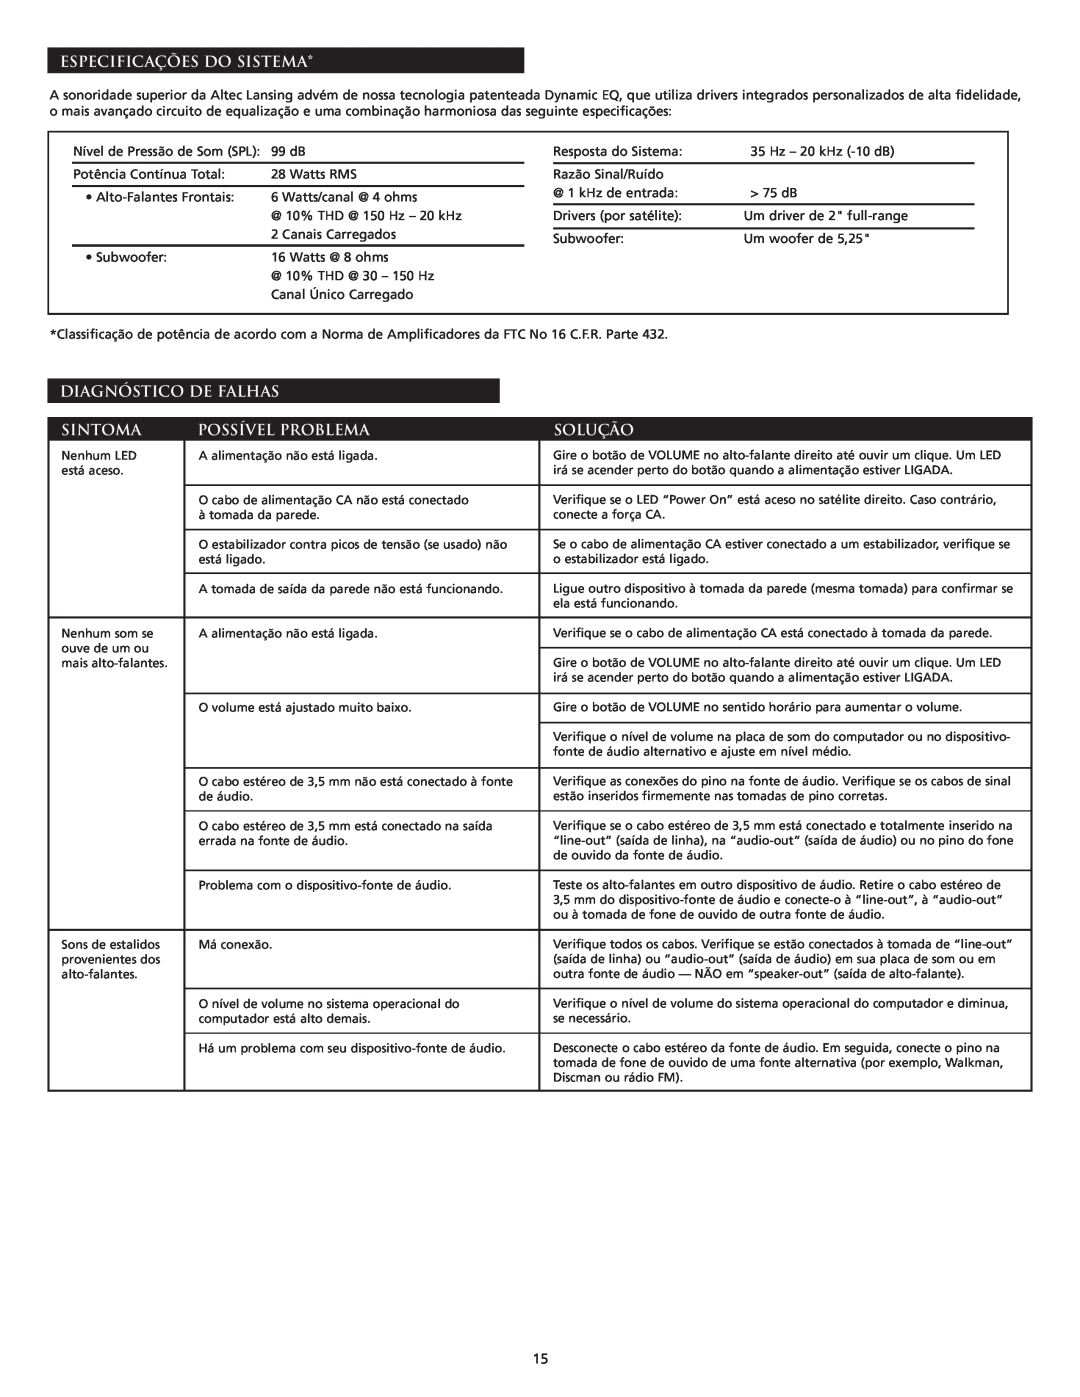 Altec Lansing VS2221 manual Especificações Do Sistema, Diagnóstico De Falhas, Sintoma, Possível Problema, Solução 